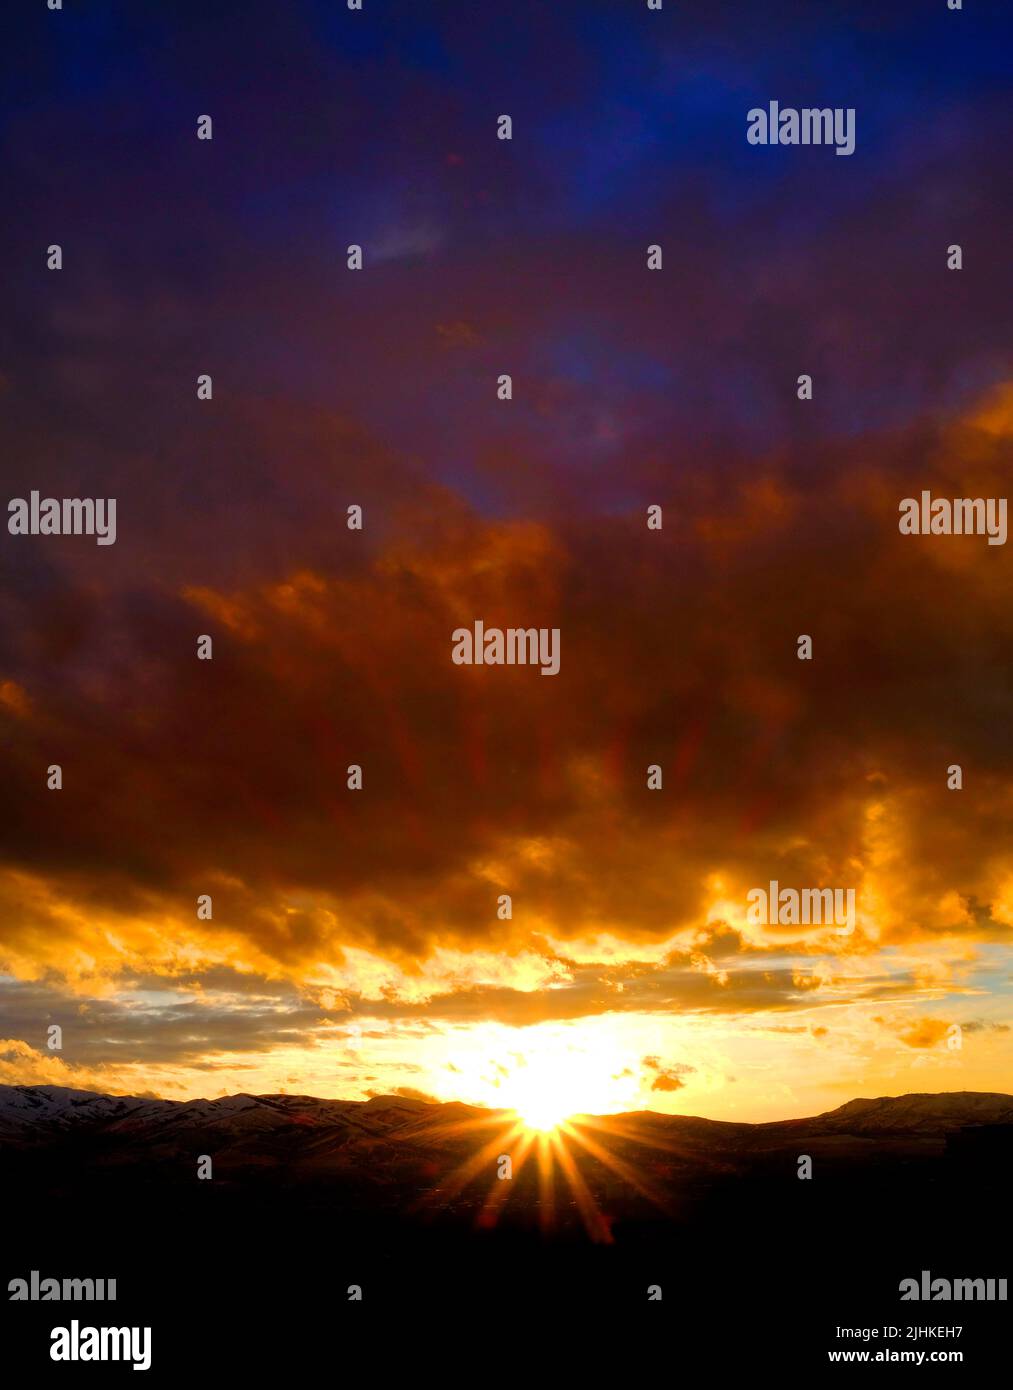 Sonnenuntergang auf Berge Horizont Wolken sunstar Sun Star leuchtenden hellen Stockfoto